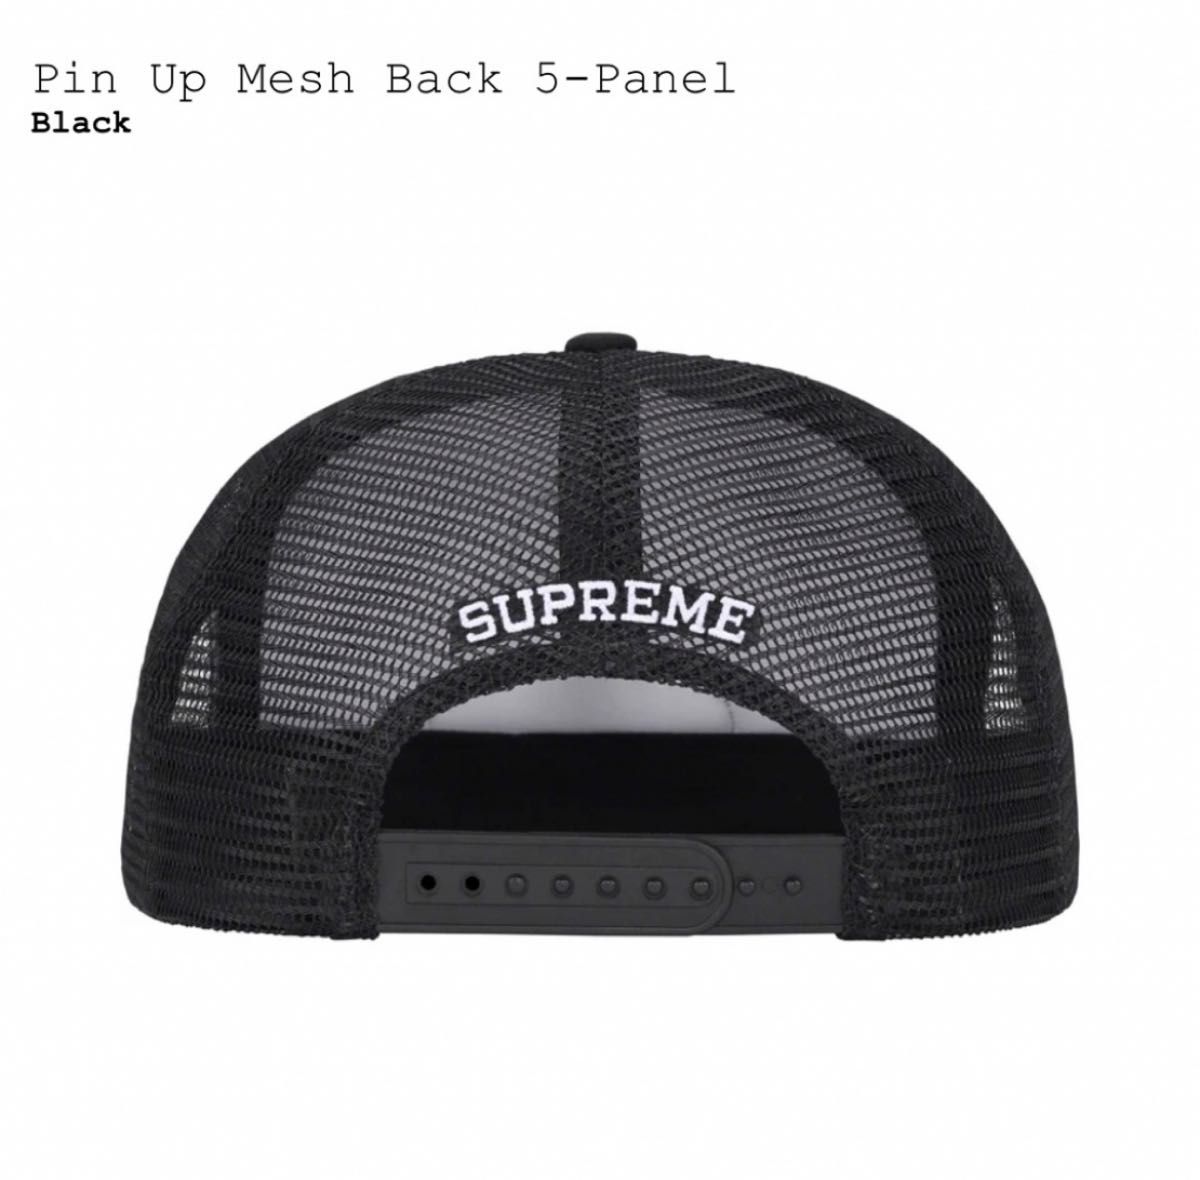 Supreme Pin Up Mesh Back 5-Panel